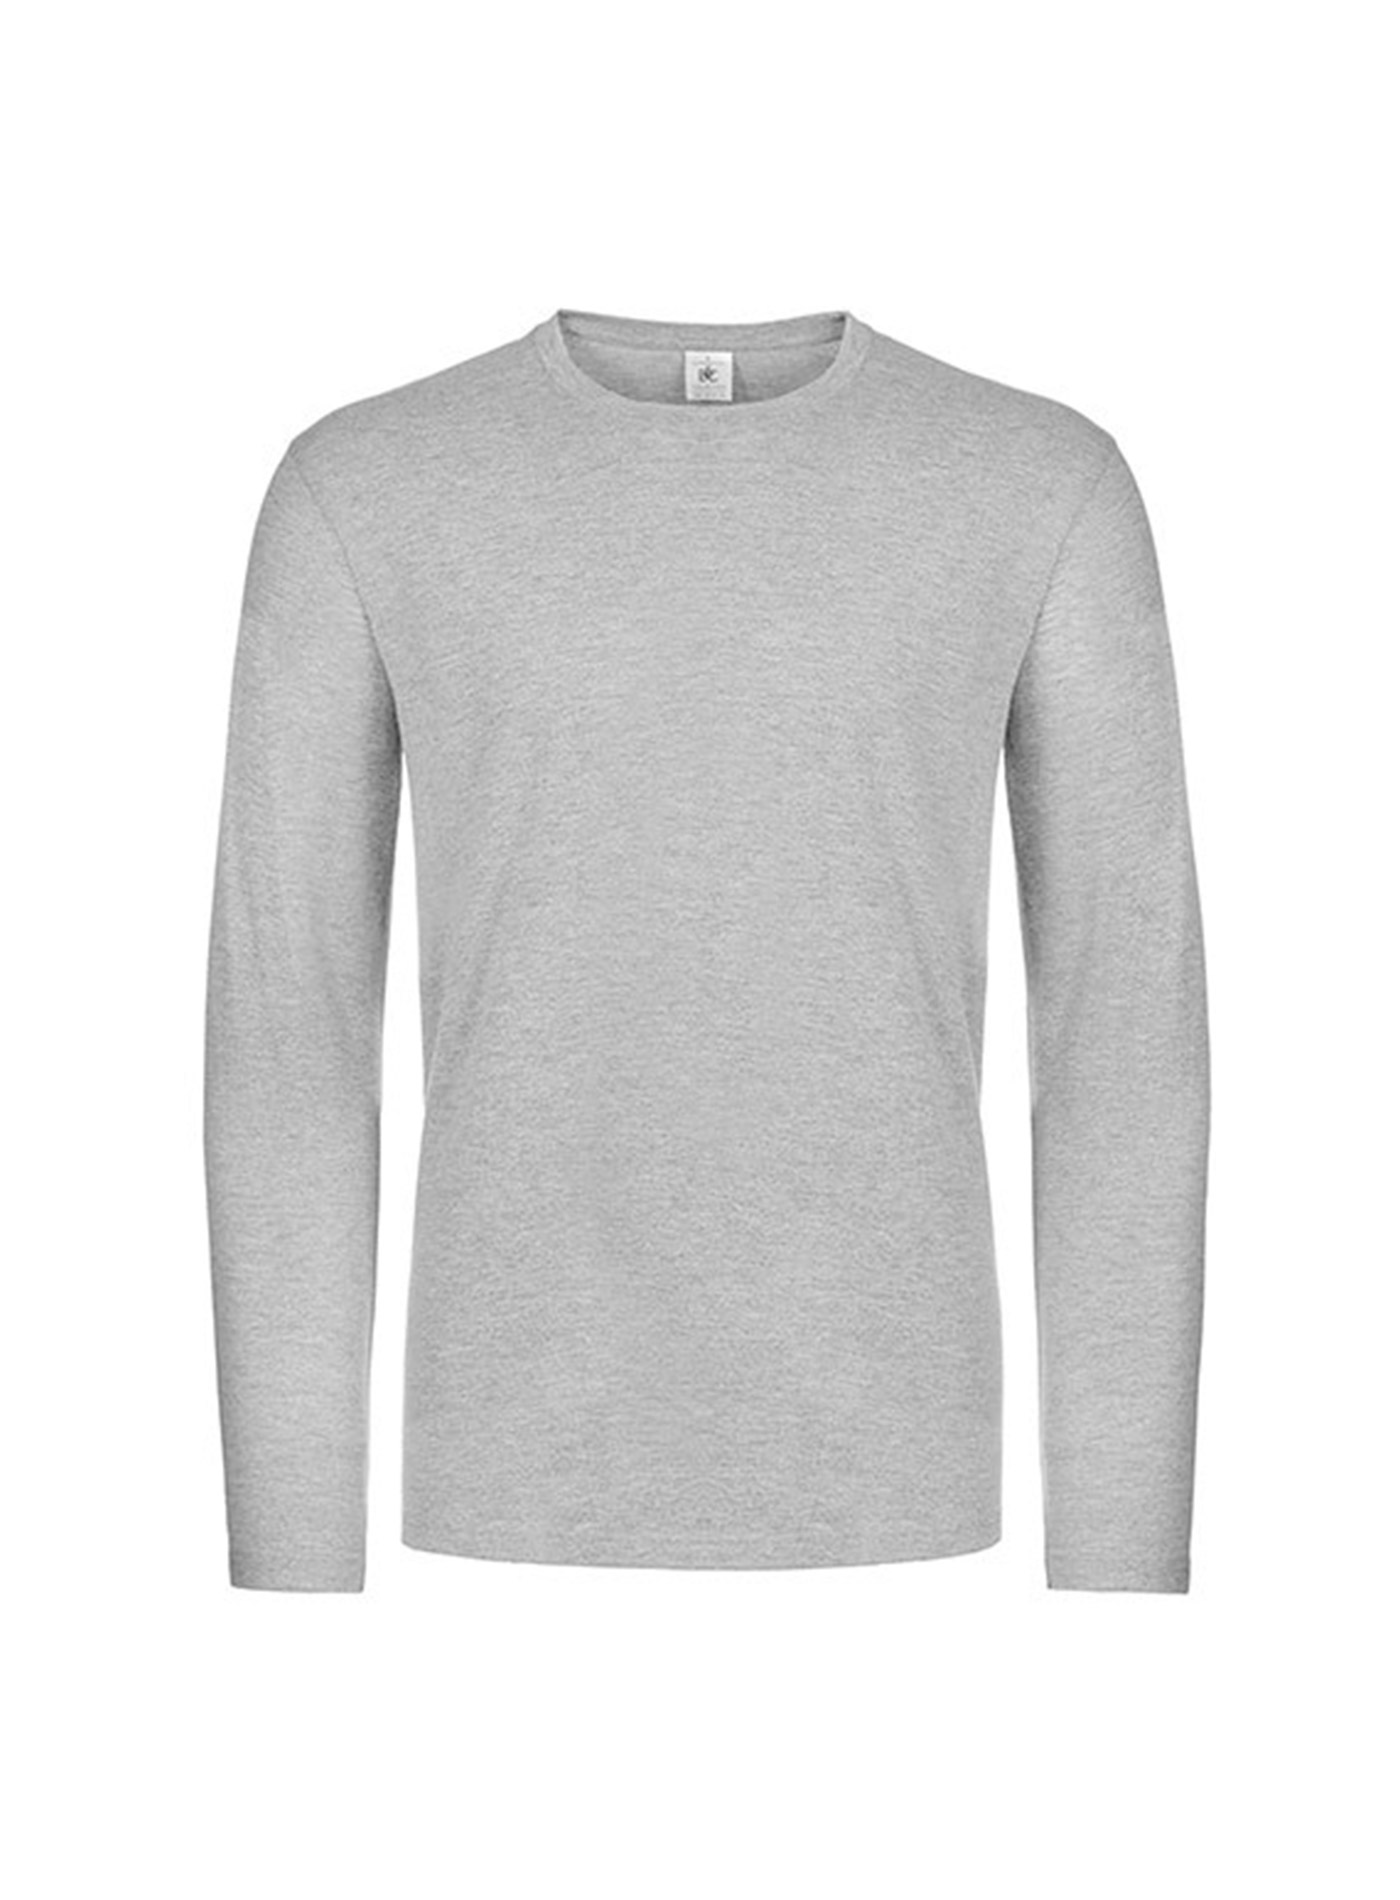 Pánské tričko s dlouhým rukávem B&C Collection - Světle šedý melír M